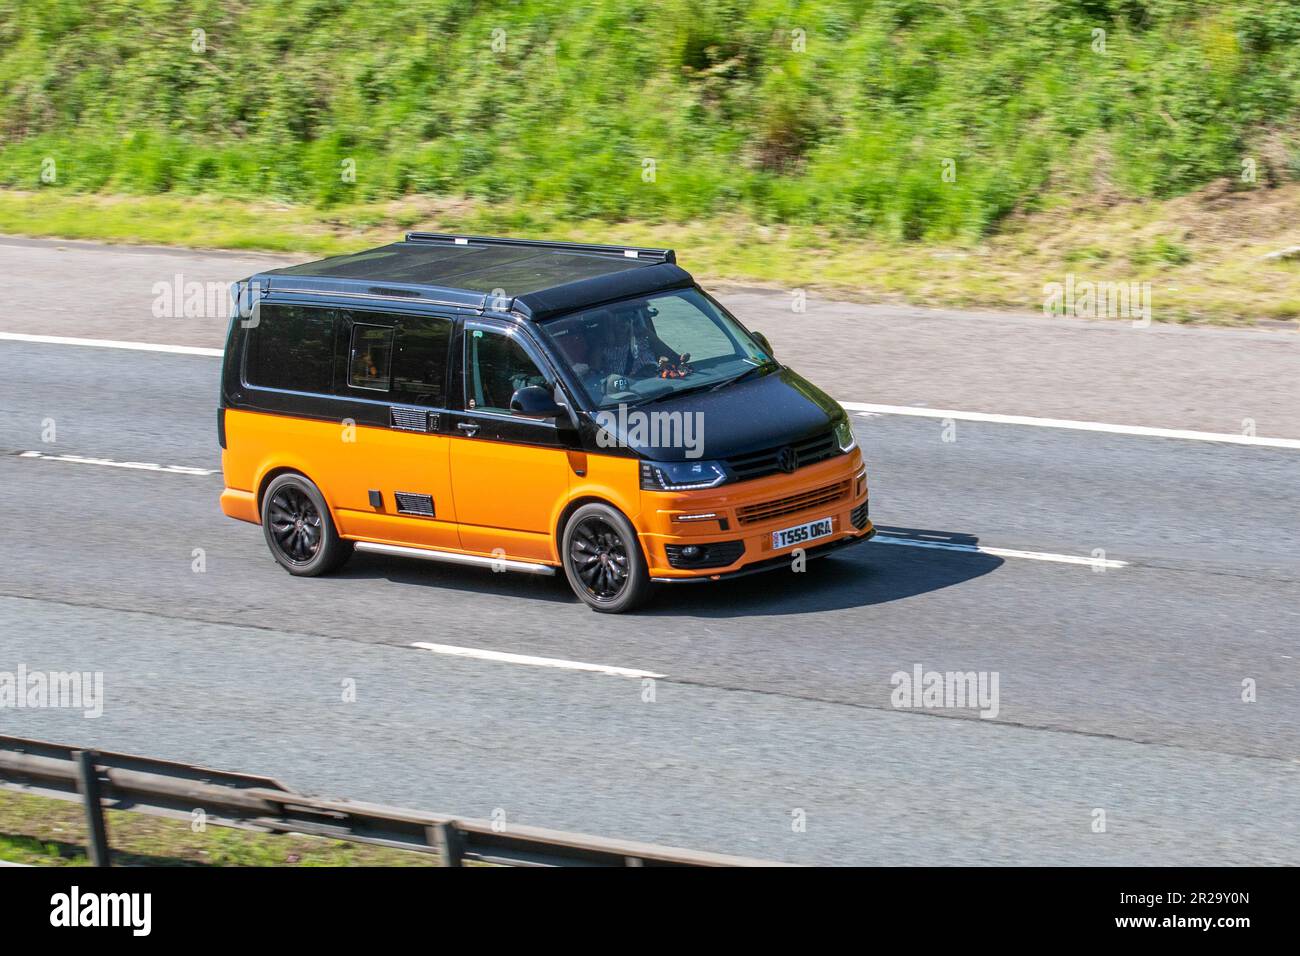 2015 Orange Noir deux tons VW VOLKSWAGEN T26 TDI P/V Trendline 1968cc Diesel fourgonnette à panneaux ; sur l'autoroute M61, Royaume-Uni Banque D'Images